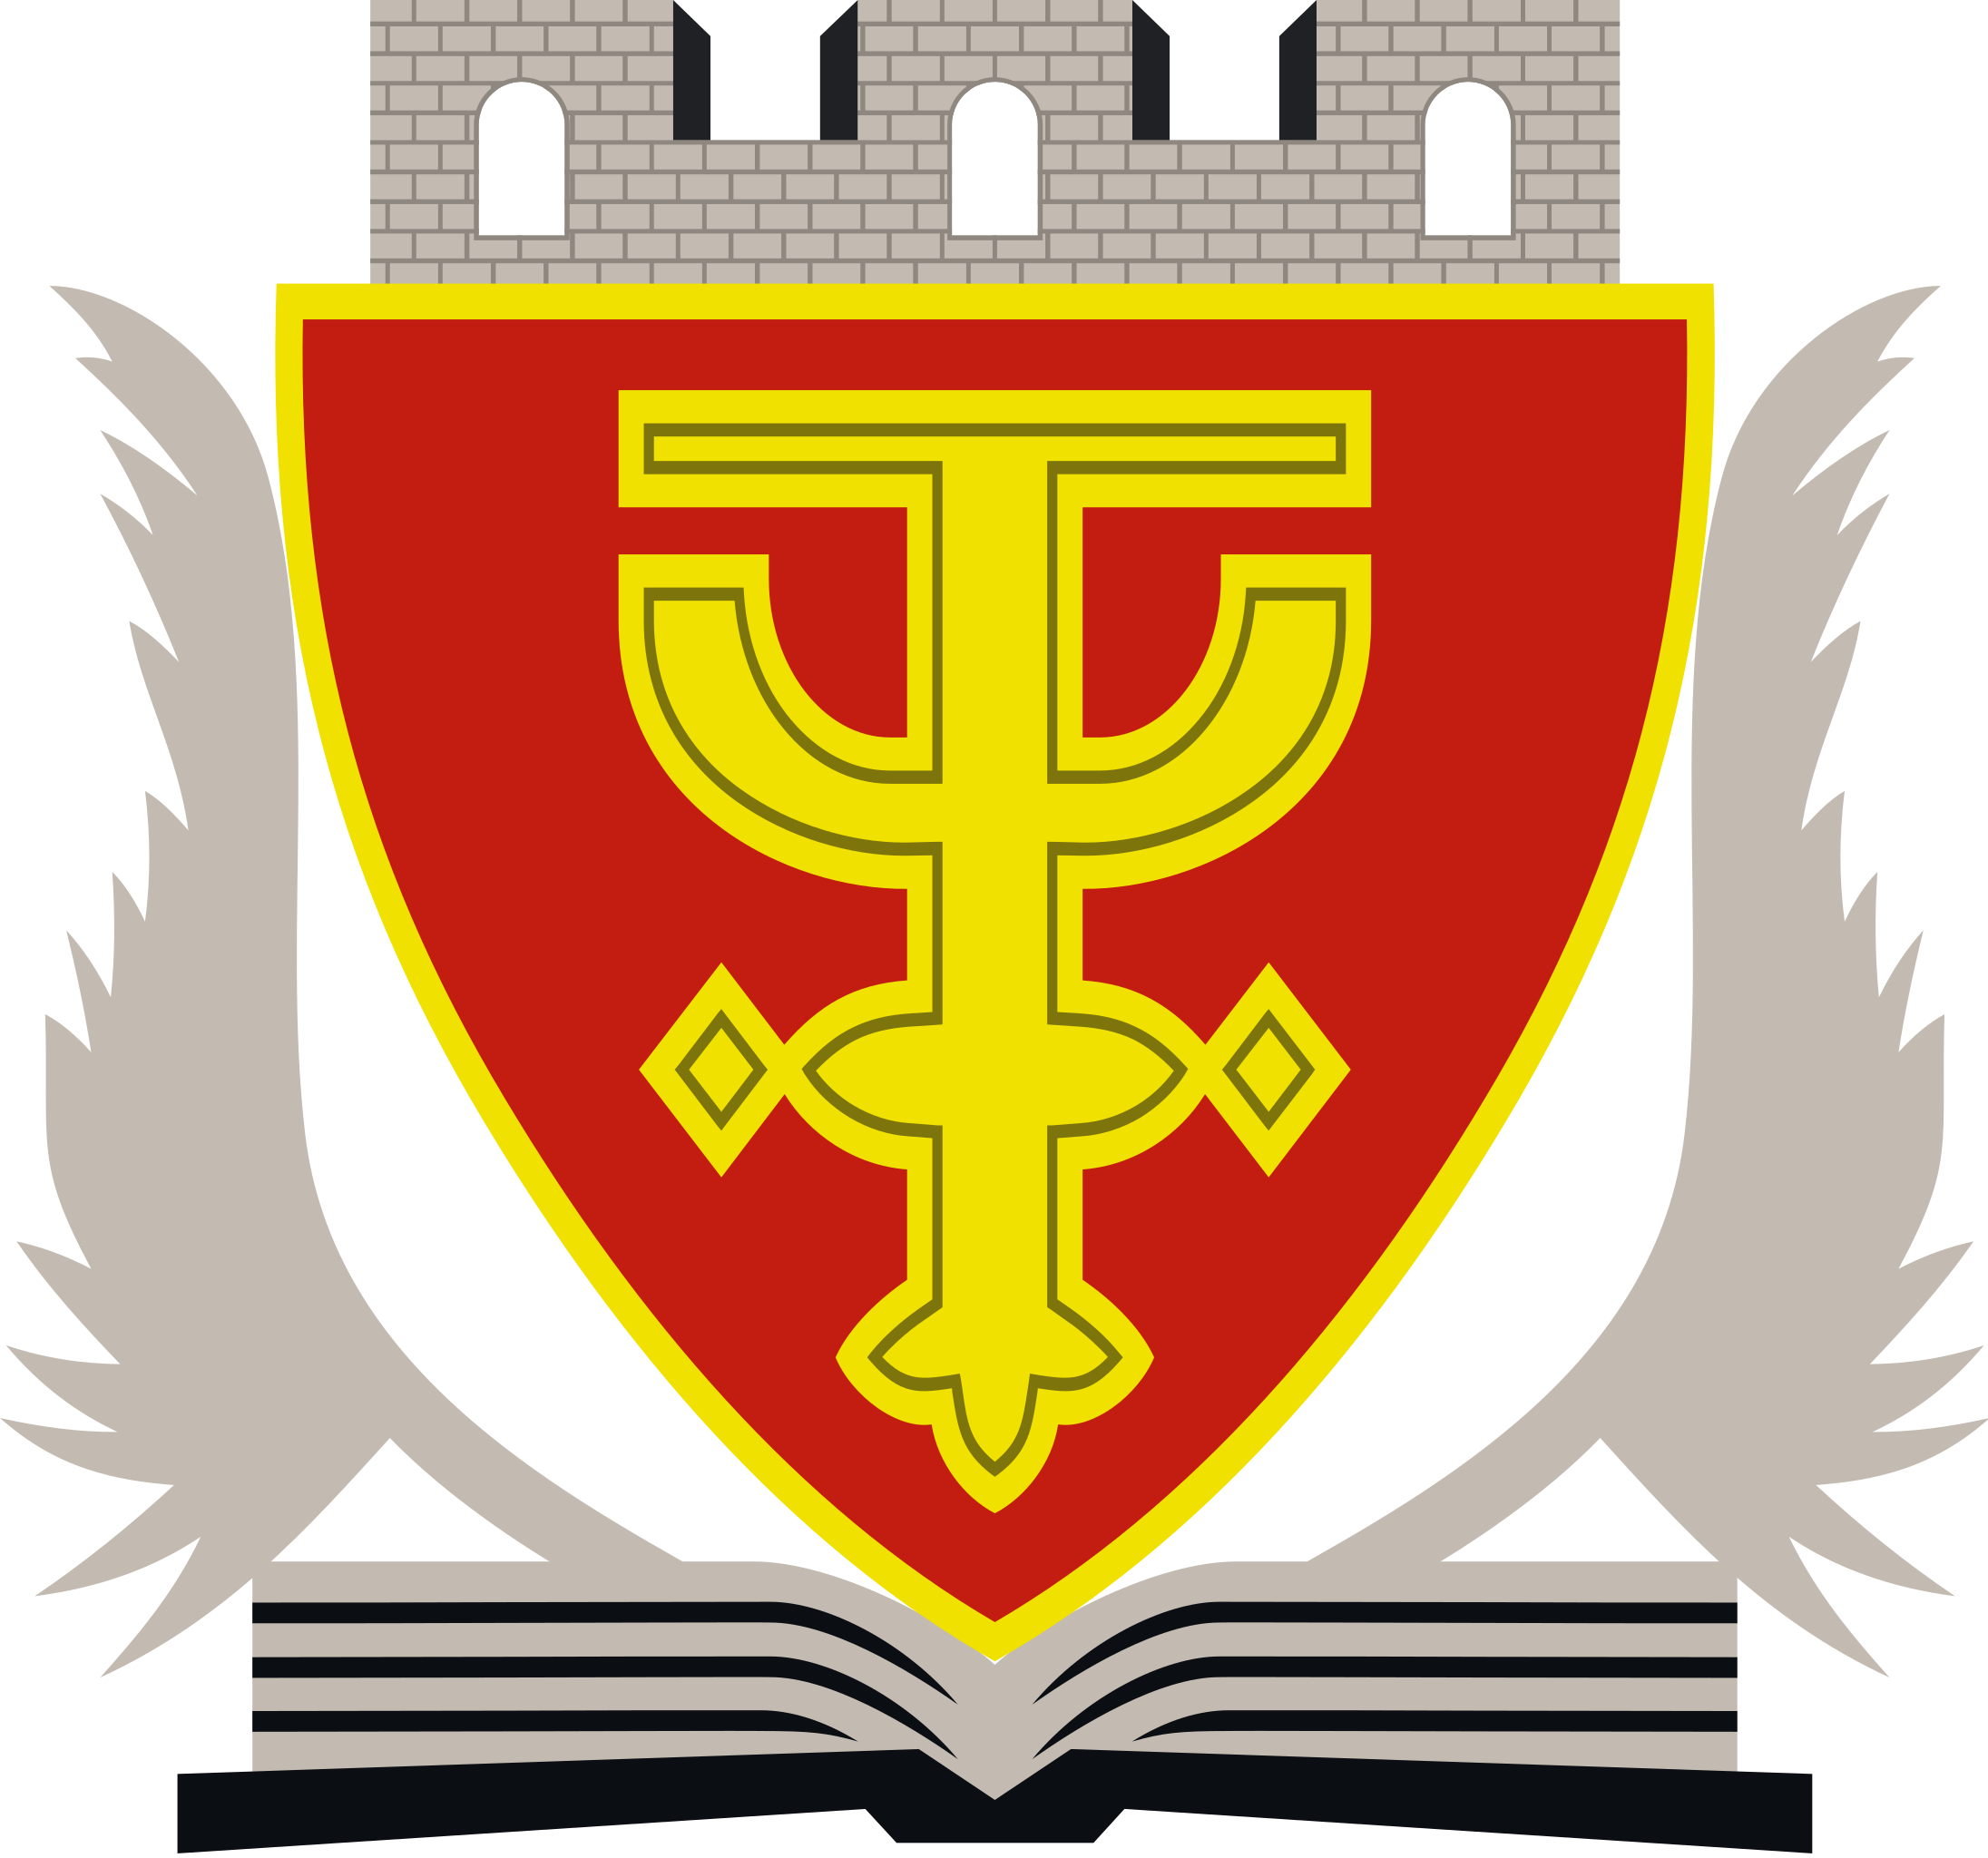 Lezhë Emblem